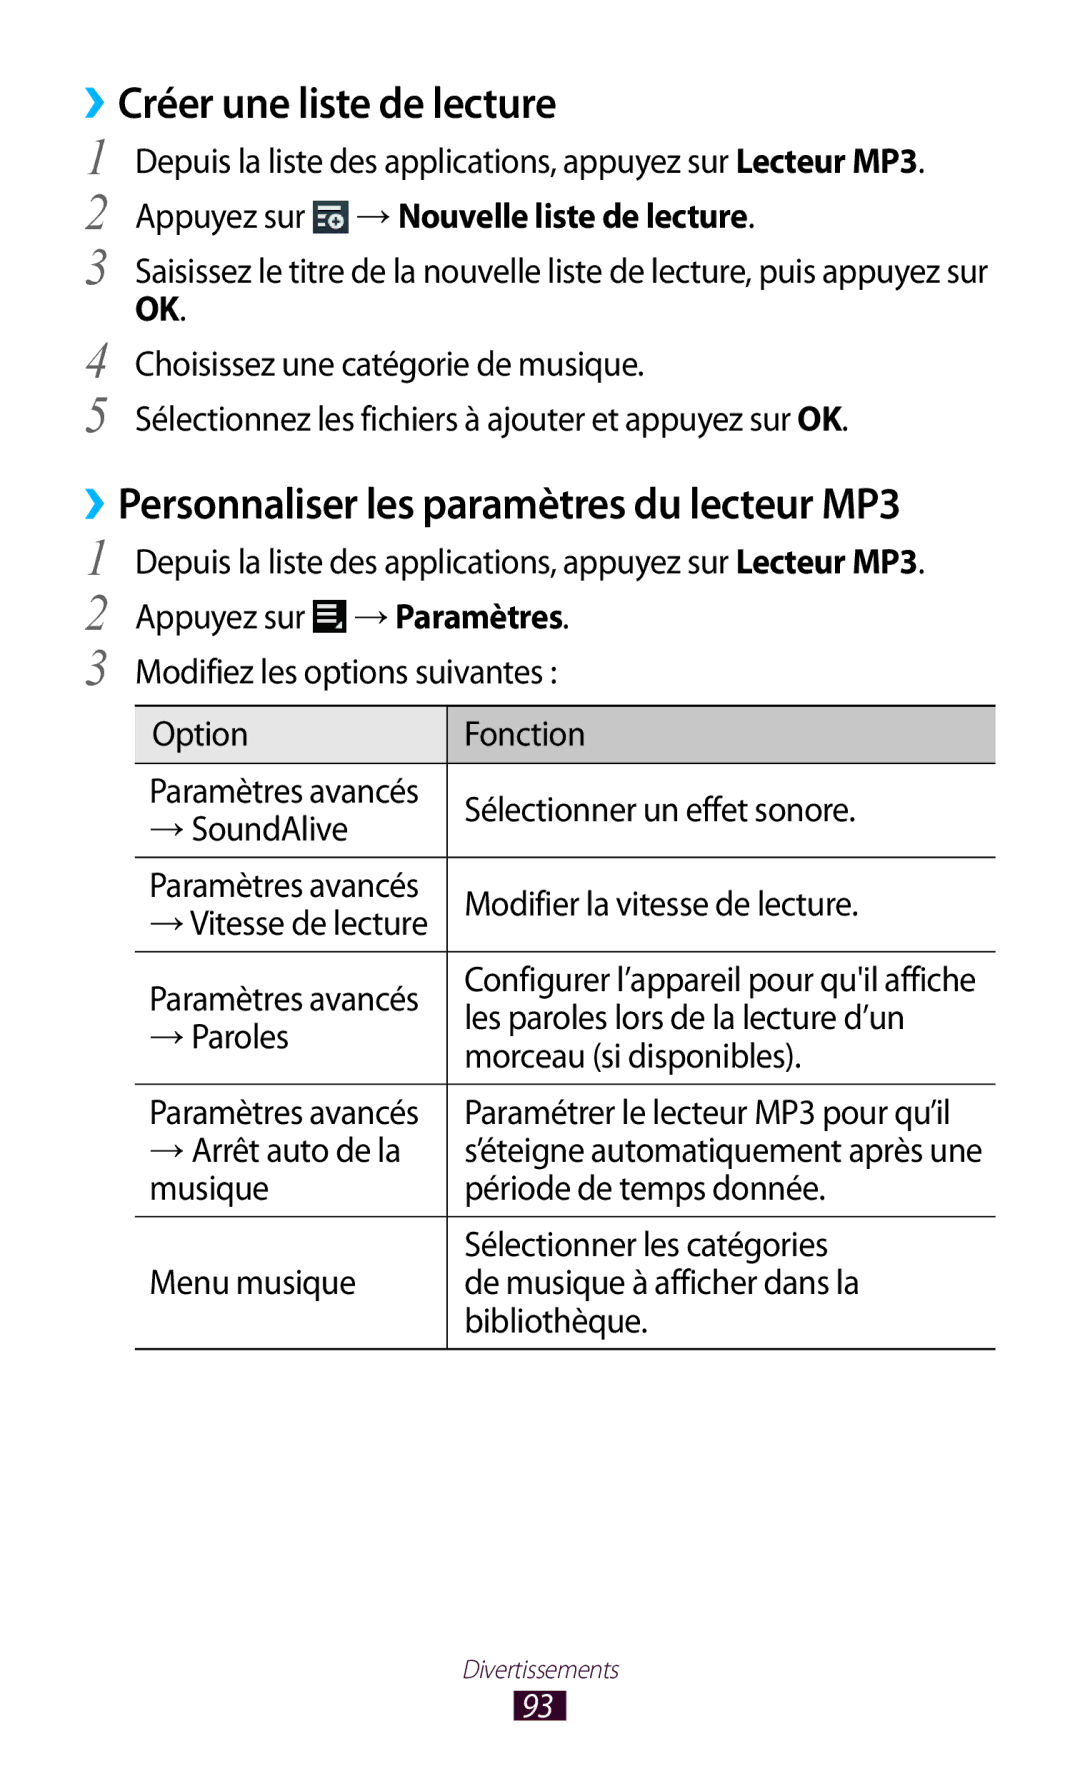 Samsung GT-P5100ZWASFR, GT-P5100TSAXEF manual ››Créer une liste de lecture, ››Personnaliser les paramètres du lecteur MP3 